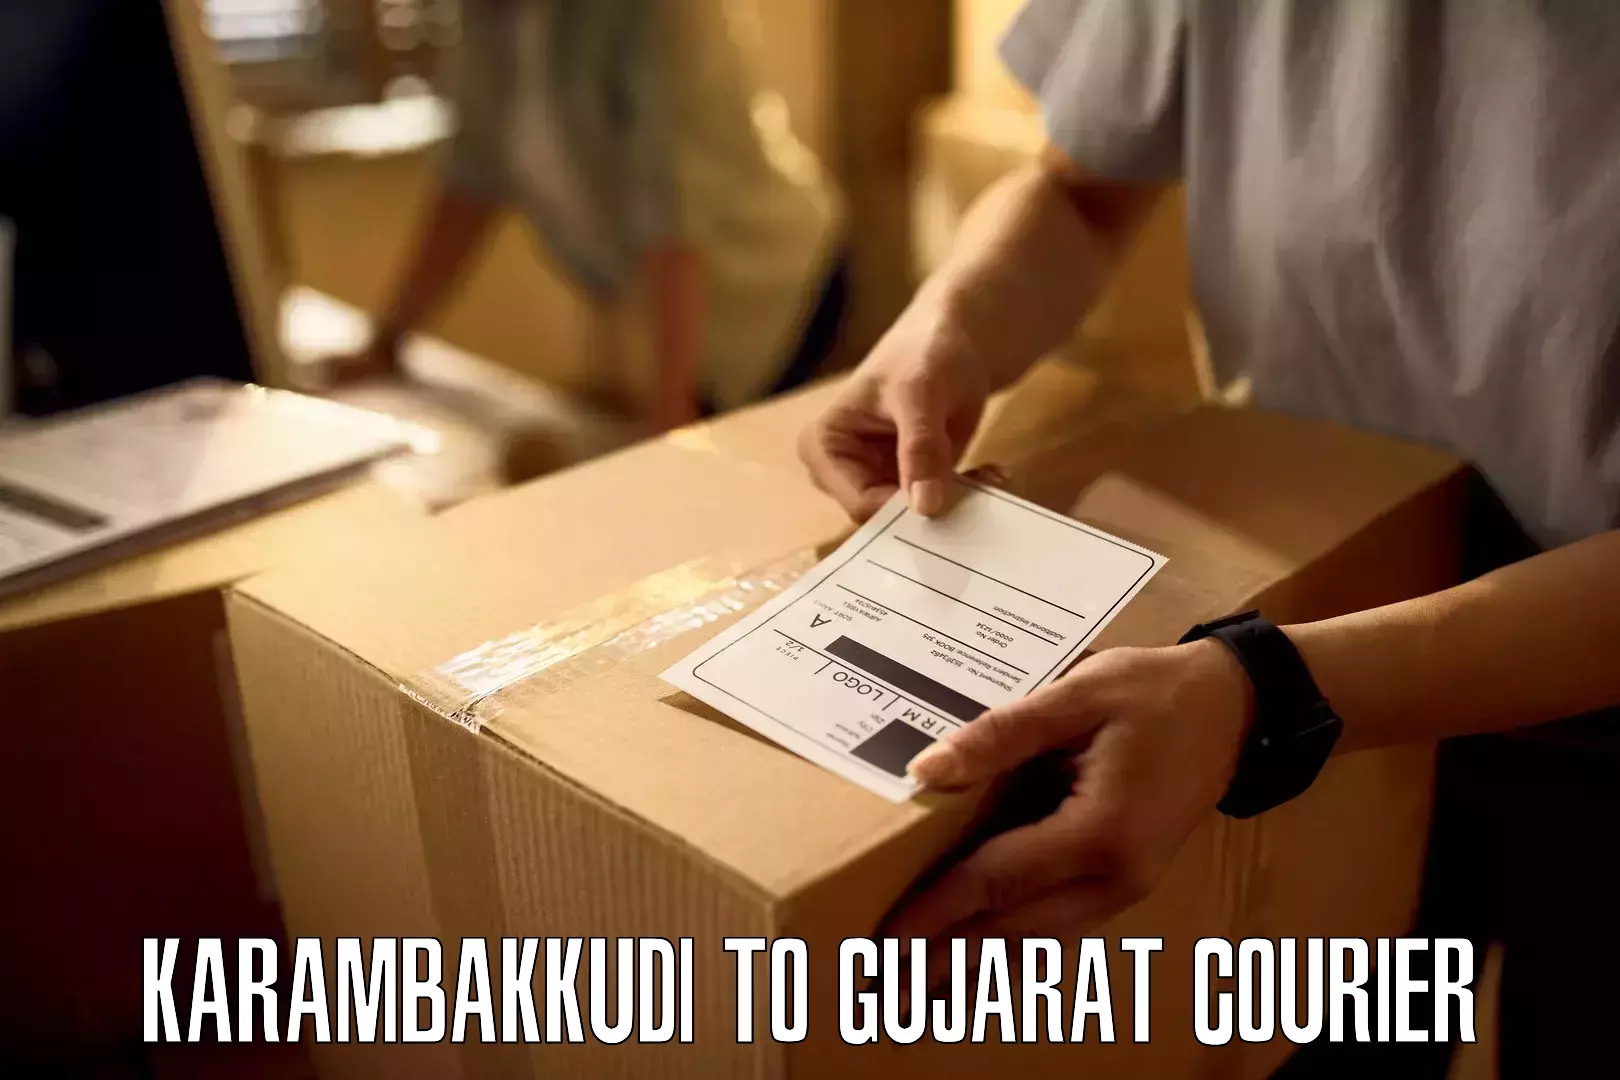 Package forwarding Karambakkudi to Gujarat